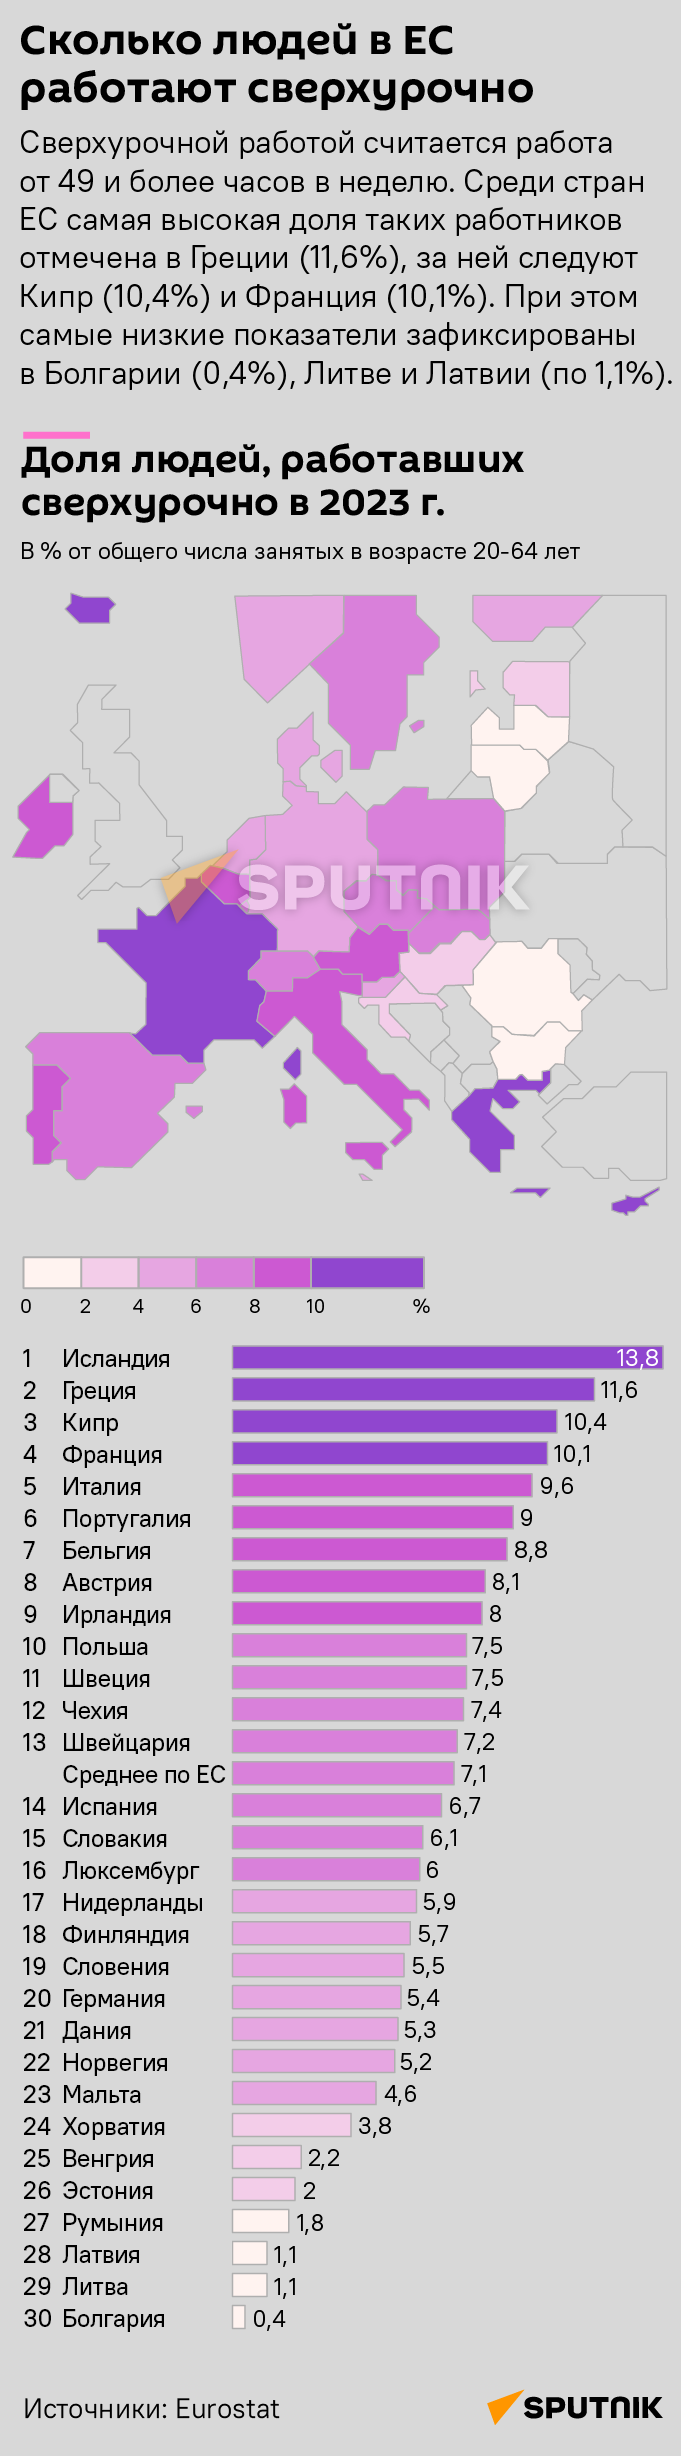 Сколько людей в ЕС работали сверхурочно в 2023 году  - Sputnik Литва